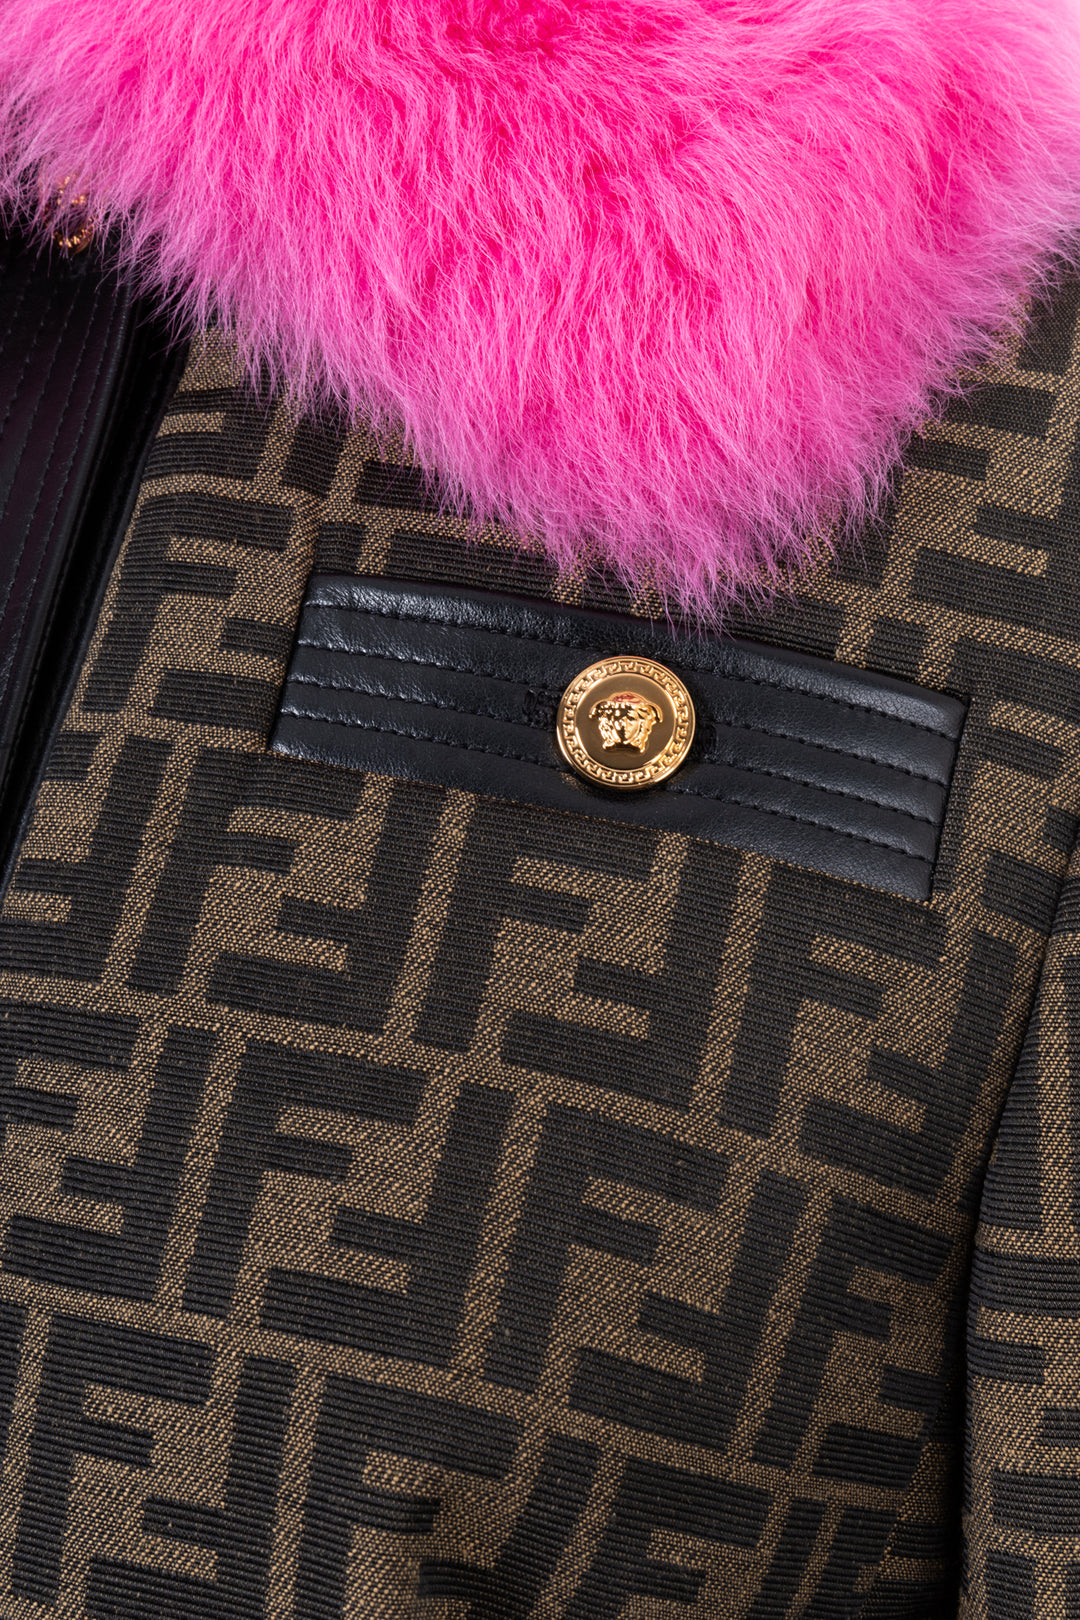 FENDIxVERSACE Fur Collar Jacket Zucca Pink